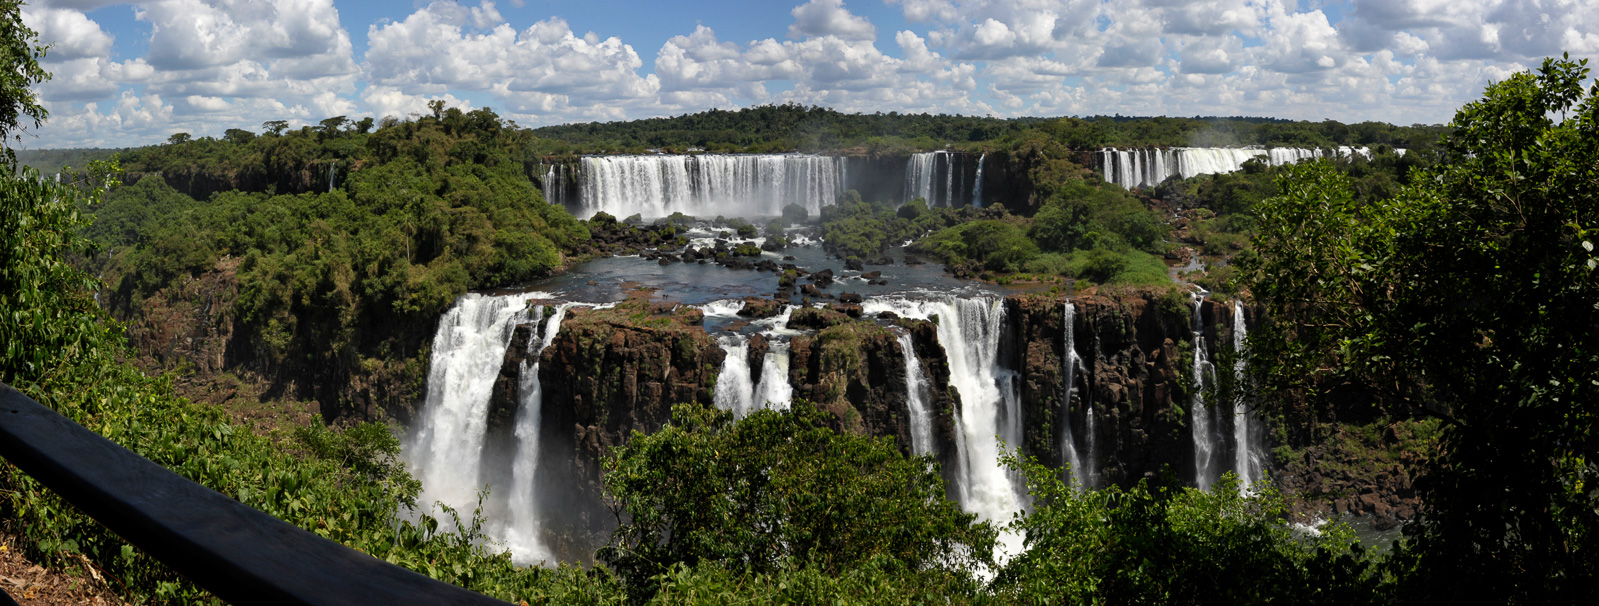 Cataratas del Iguazu [28 mm, 1/320 Sek. bei f / 14, ISO 400]